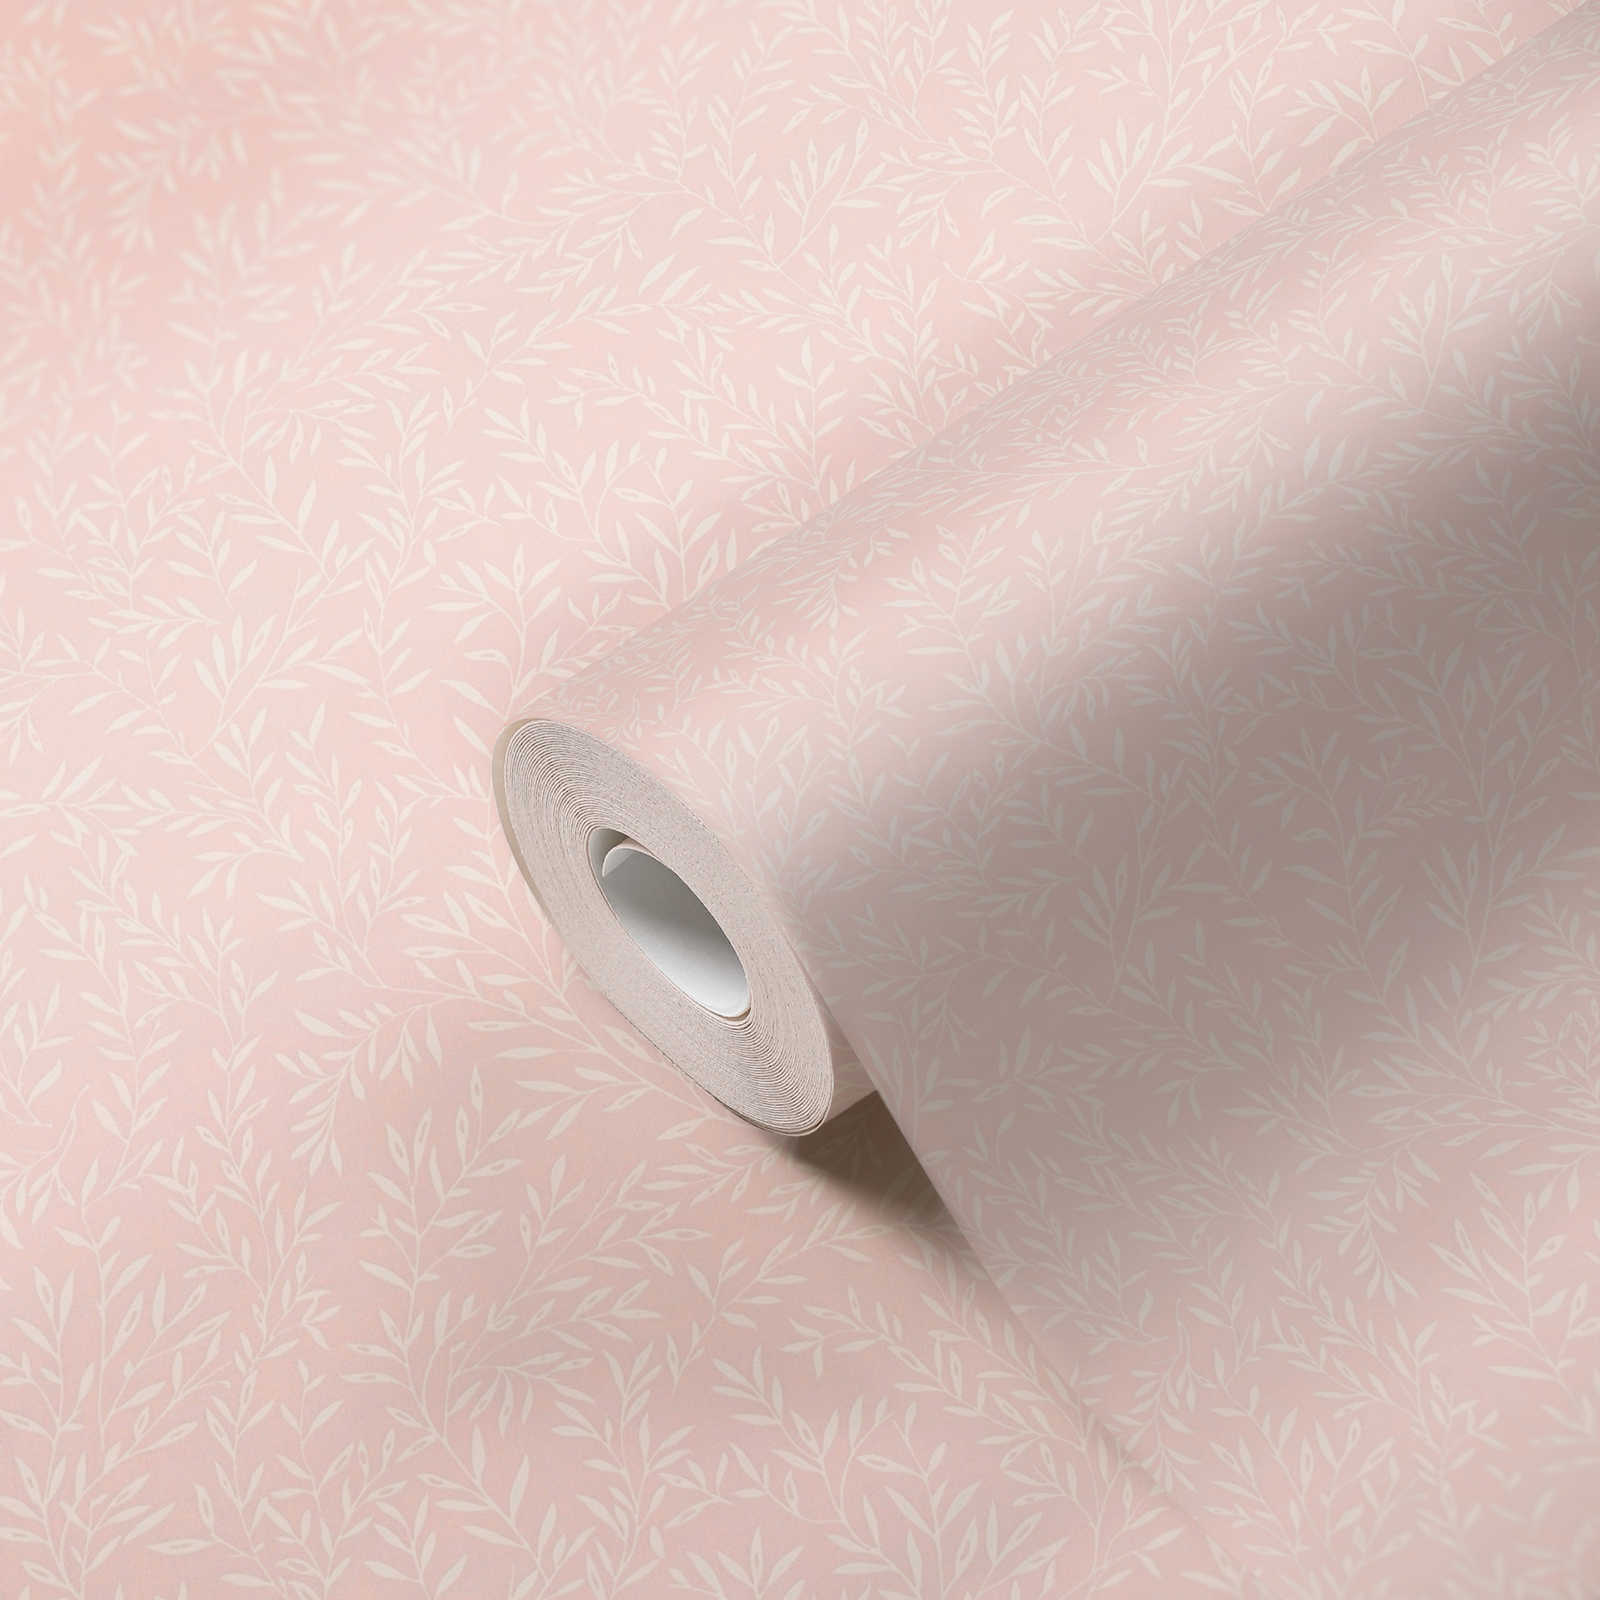             Papel pintado de casa de campo con diseño de zarcillos - rosa, blanco
        